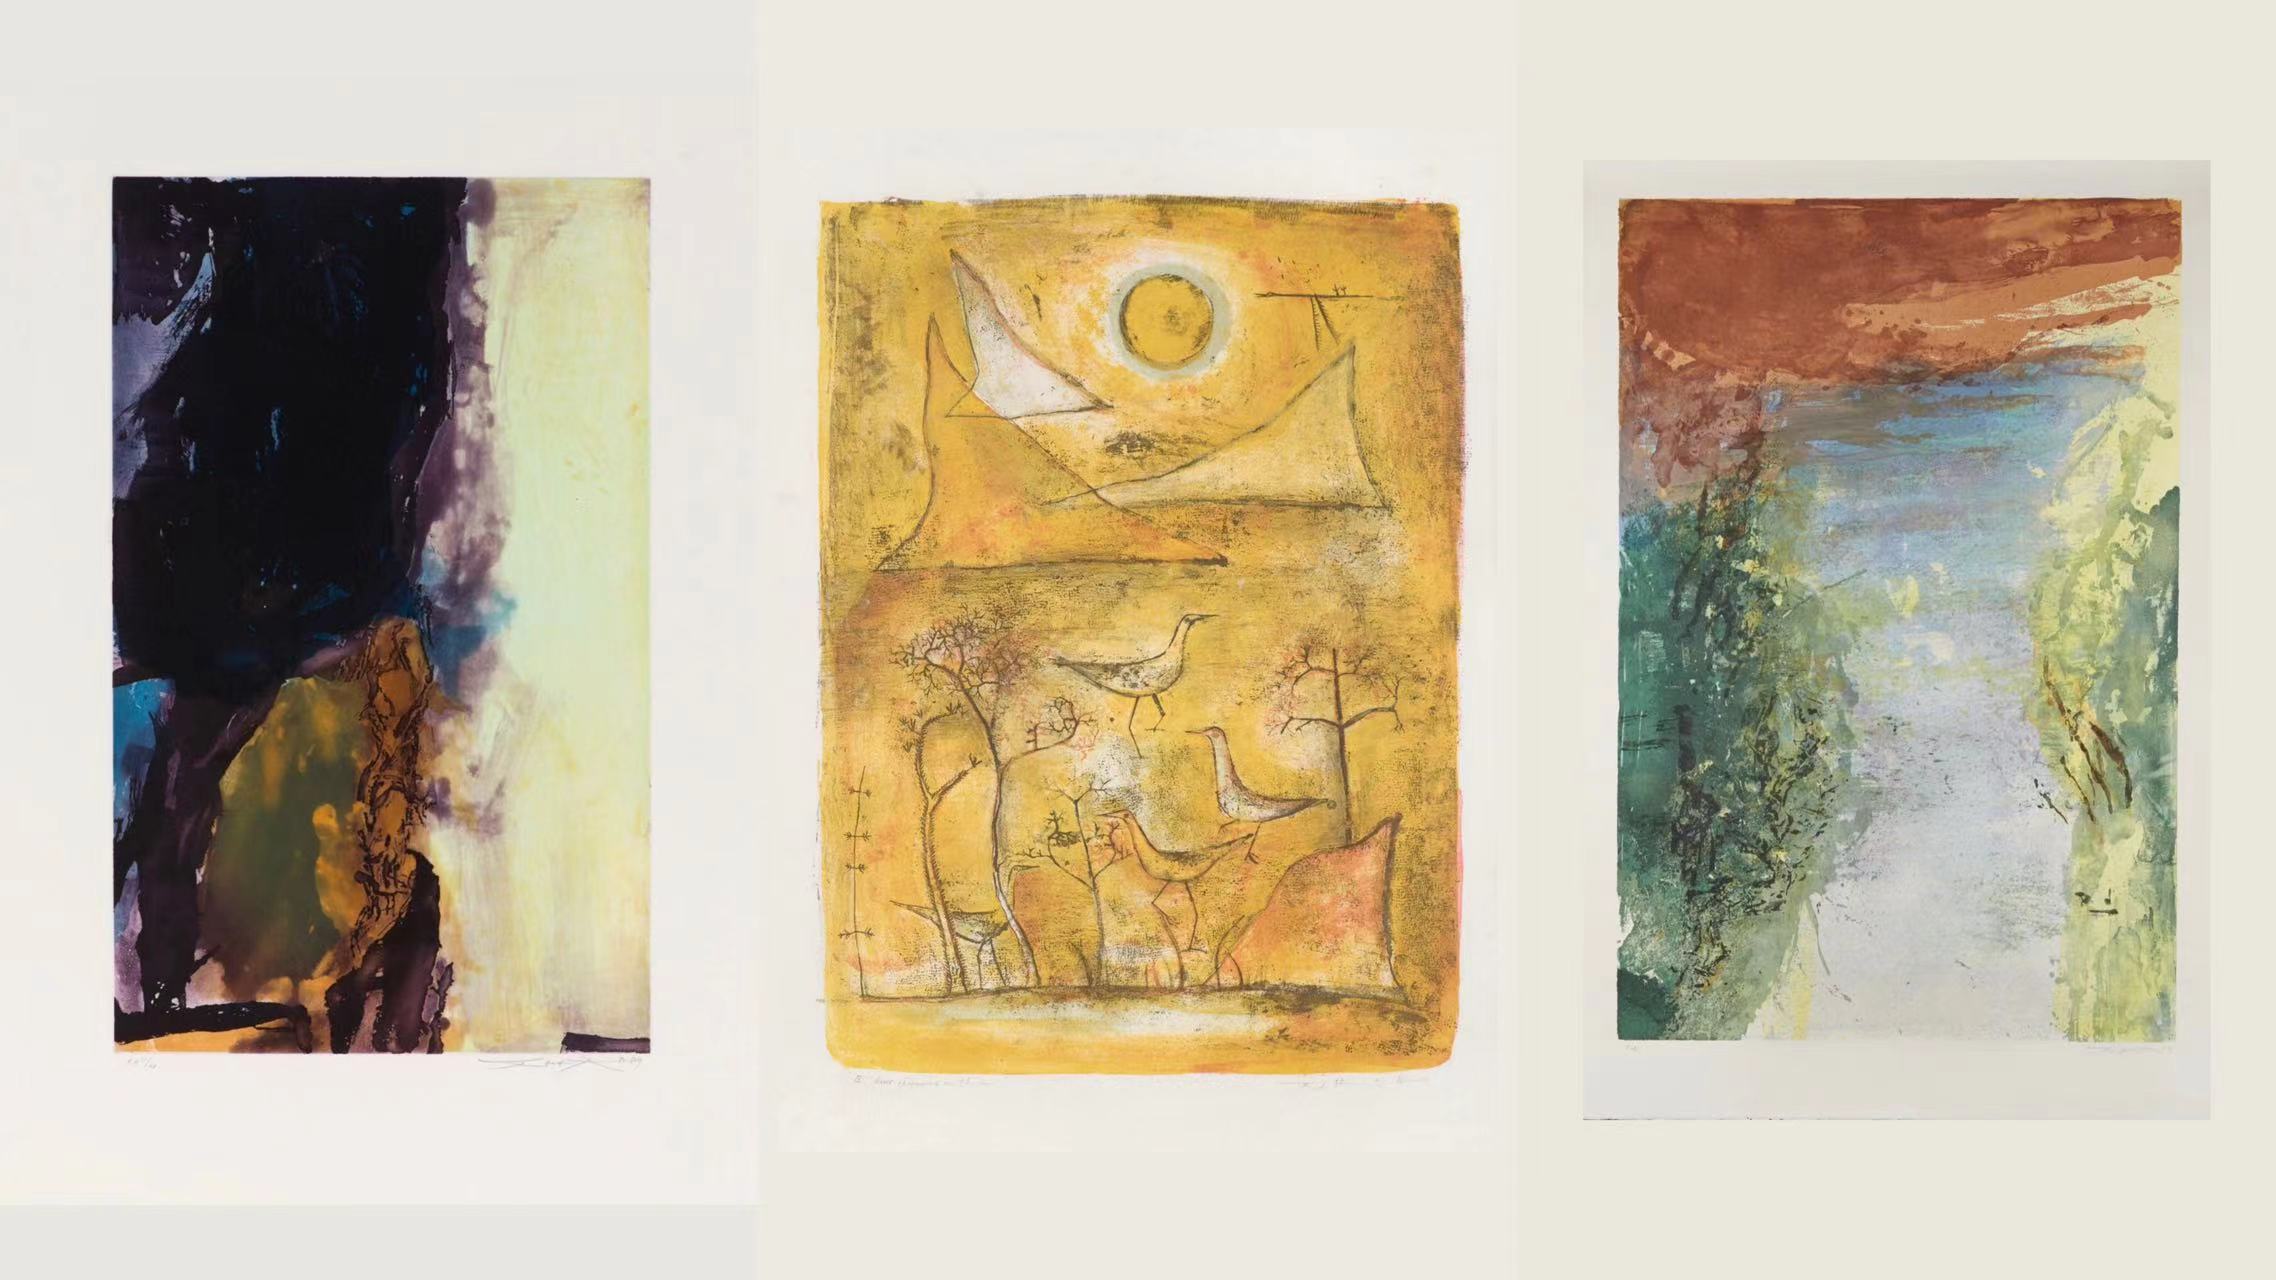 M+獲贈抽象畫大師趙無極數百件重要作品 涵蓋其藝術生涯不同階段創作